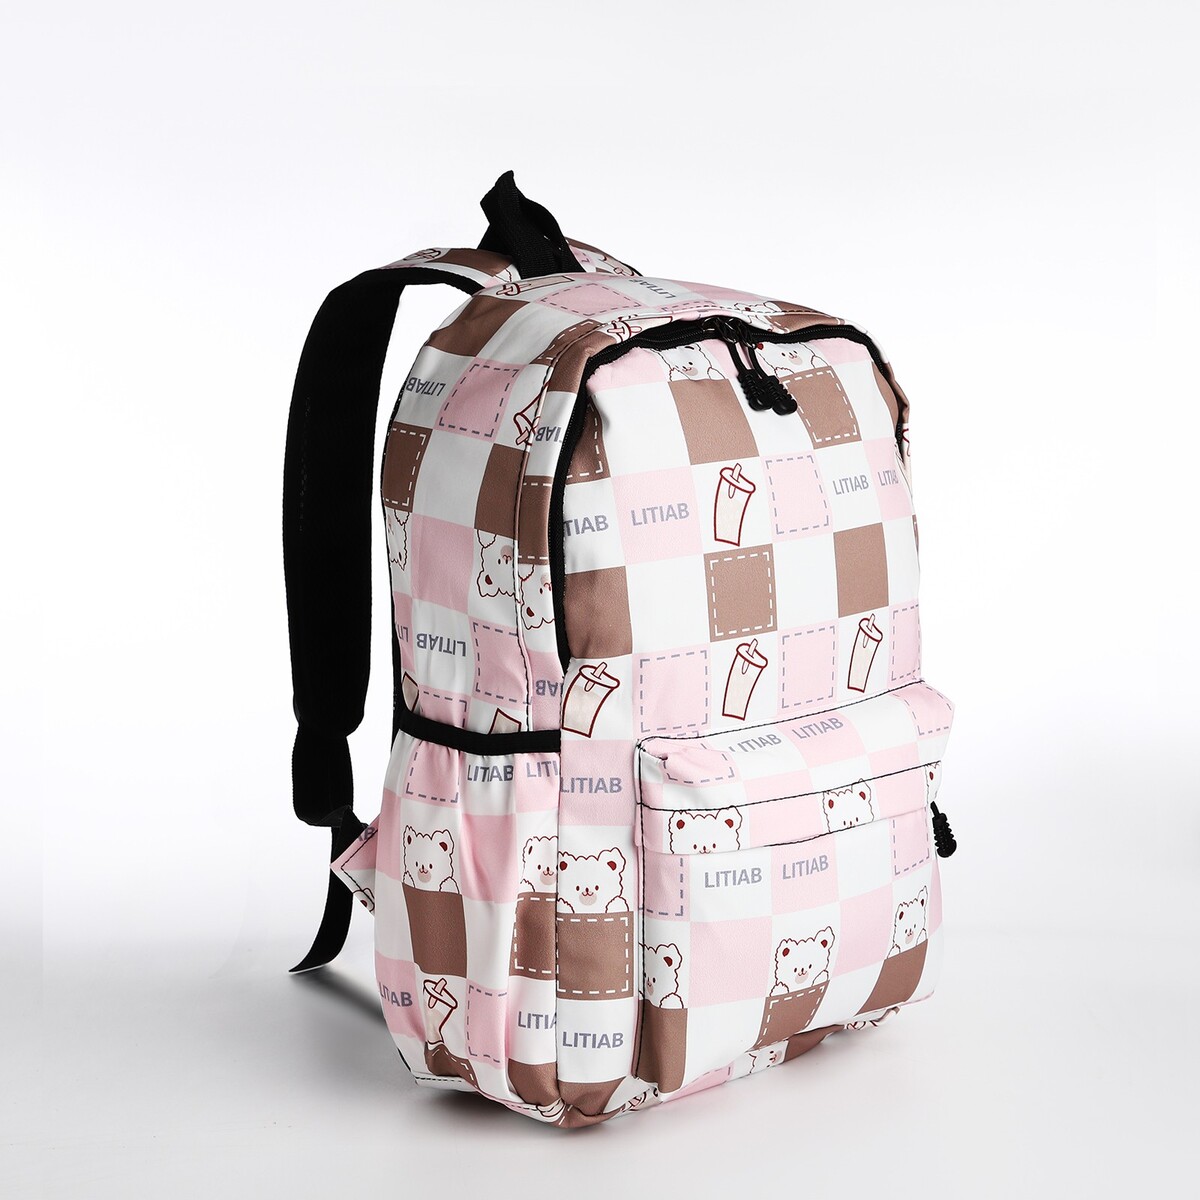 Рюкзак молодежный из текстиля, 3 кармана, цвет бежевый/розовый рюкзак молодежный из текстиля на молнии 4 кармана бежевый